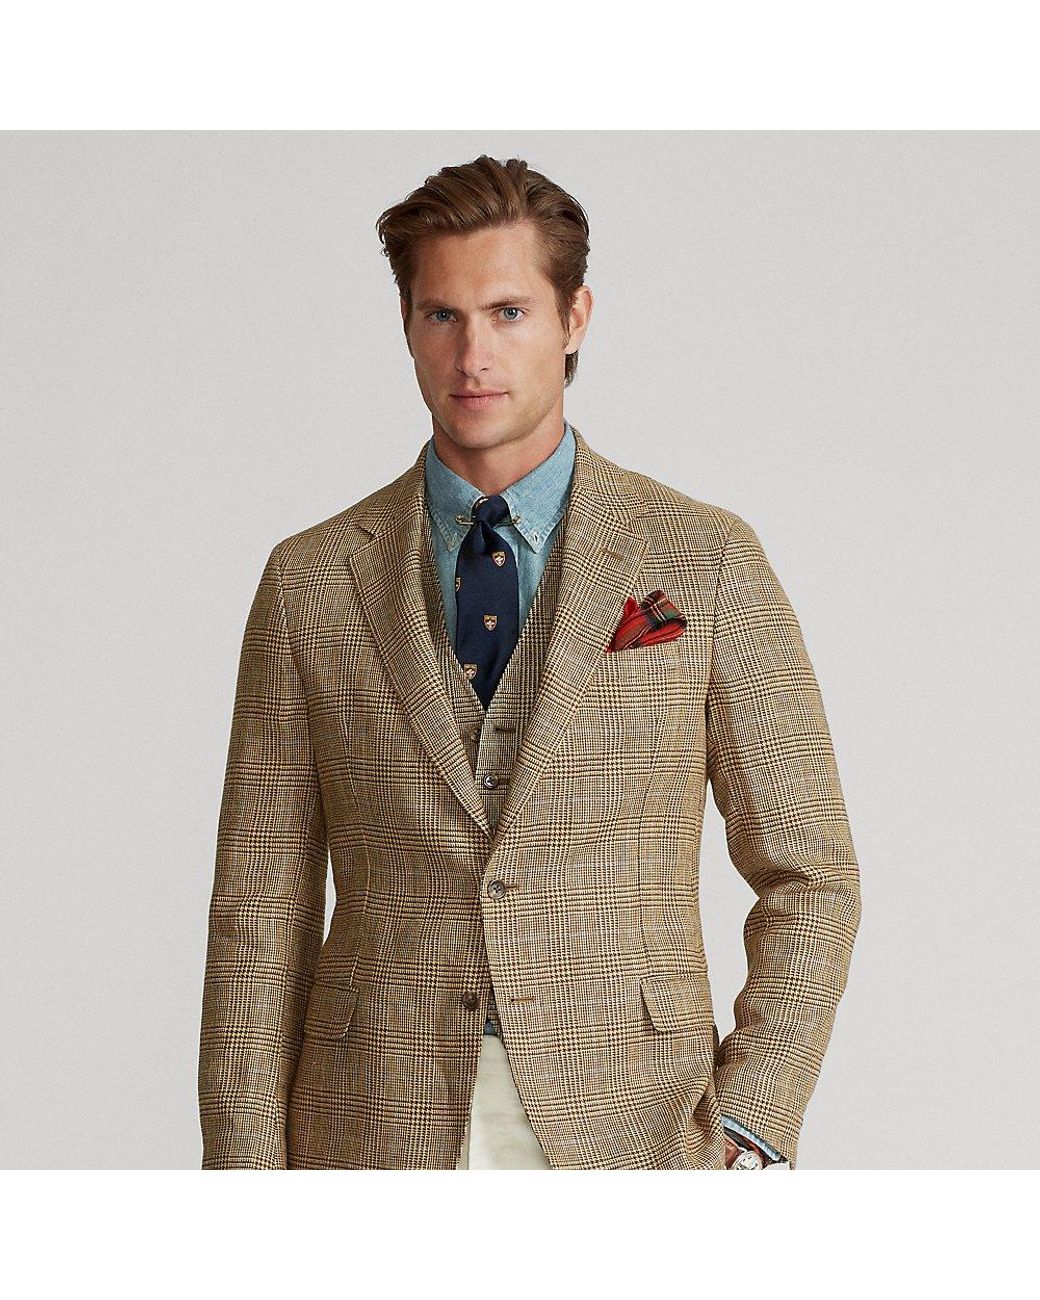 Polo Ralph Lauren Double-Knit Suit Jacket